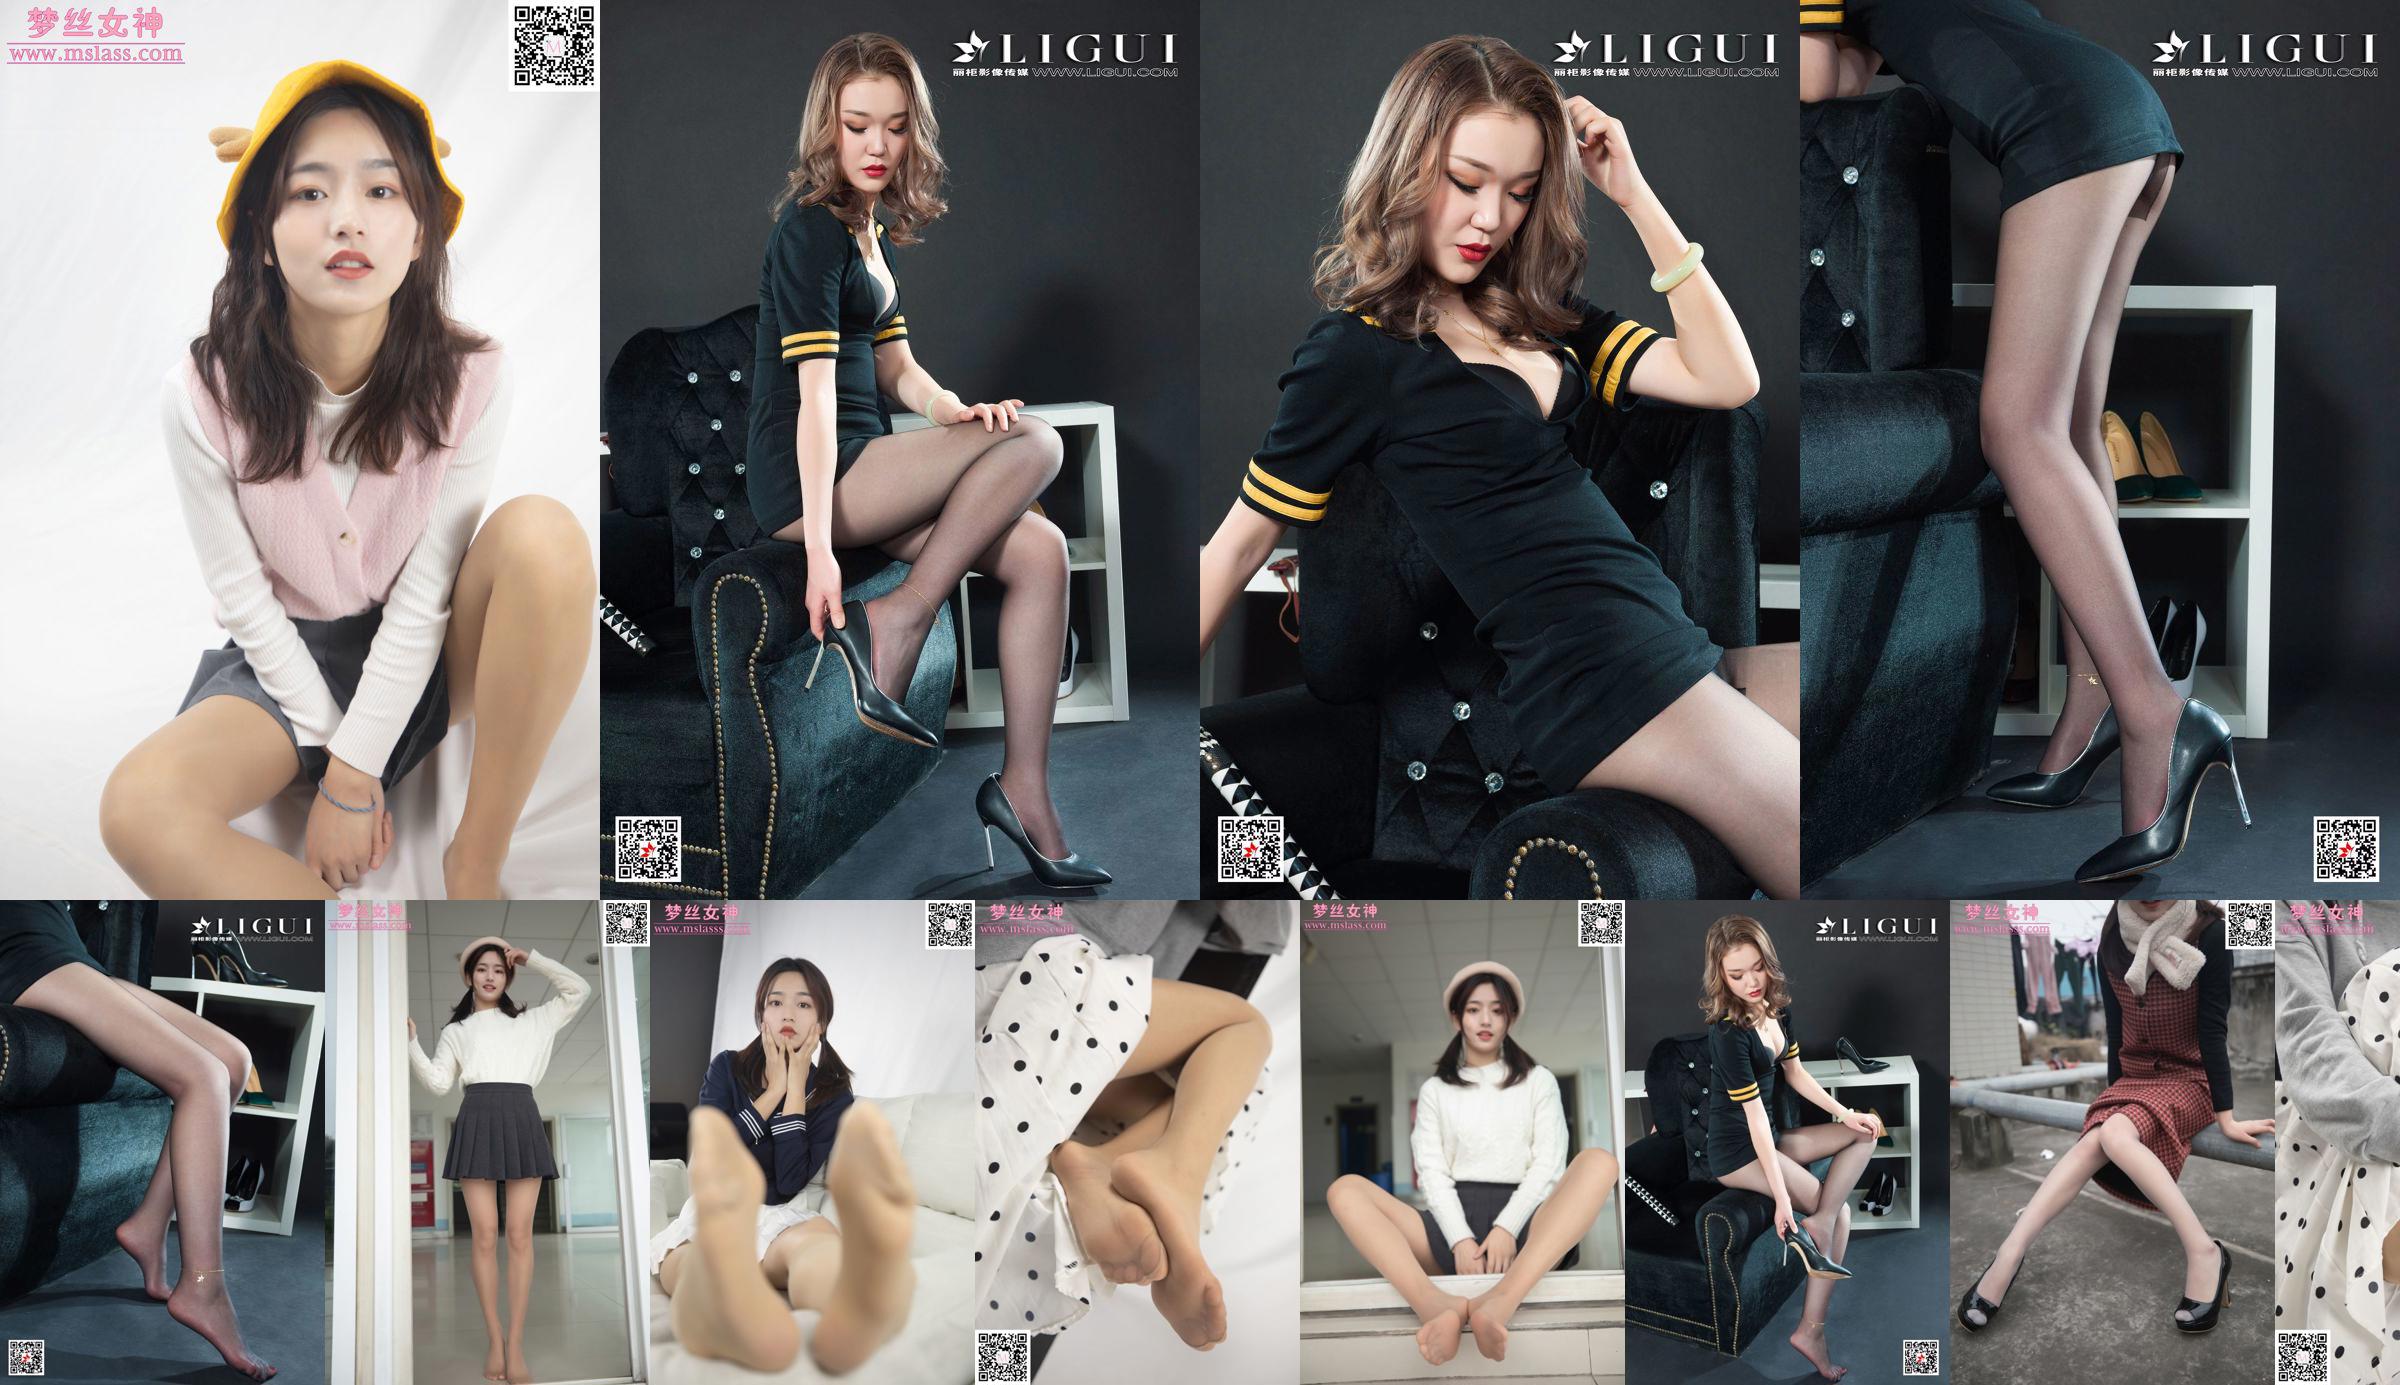 Xuanxuan Leg Người mẫu "Đồng phục tiếp viên lụa đen" [Ligui Ligui] Internet Beauty No.a6ca0d Trang 21